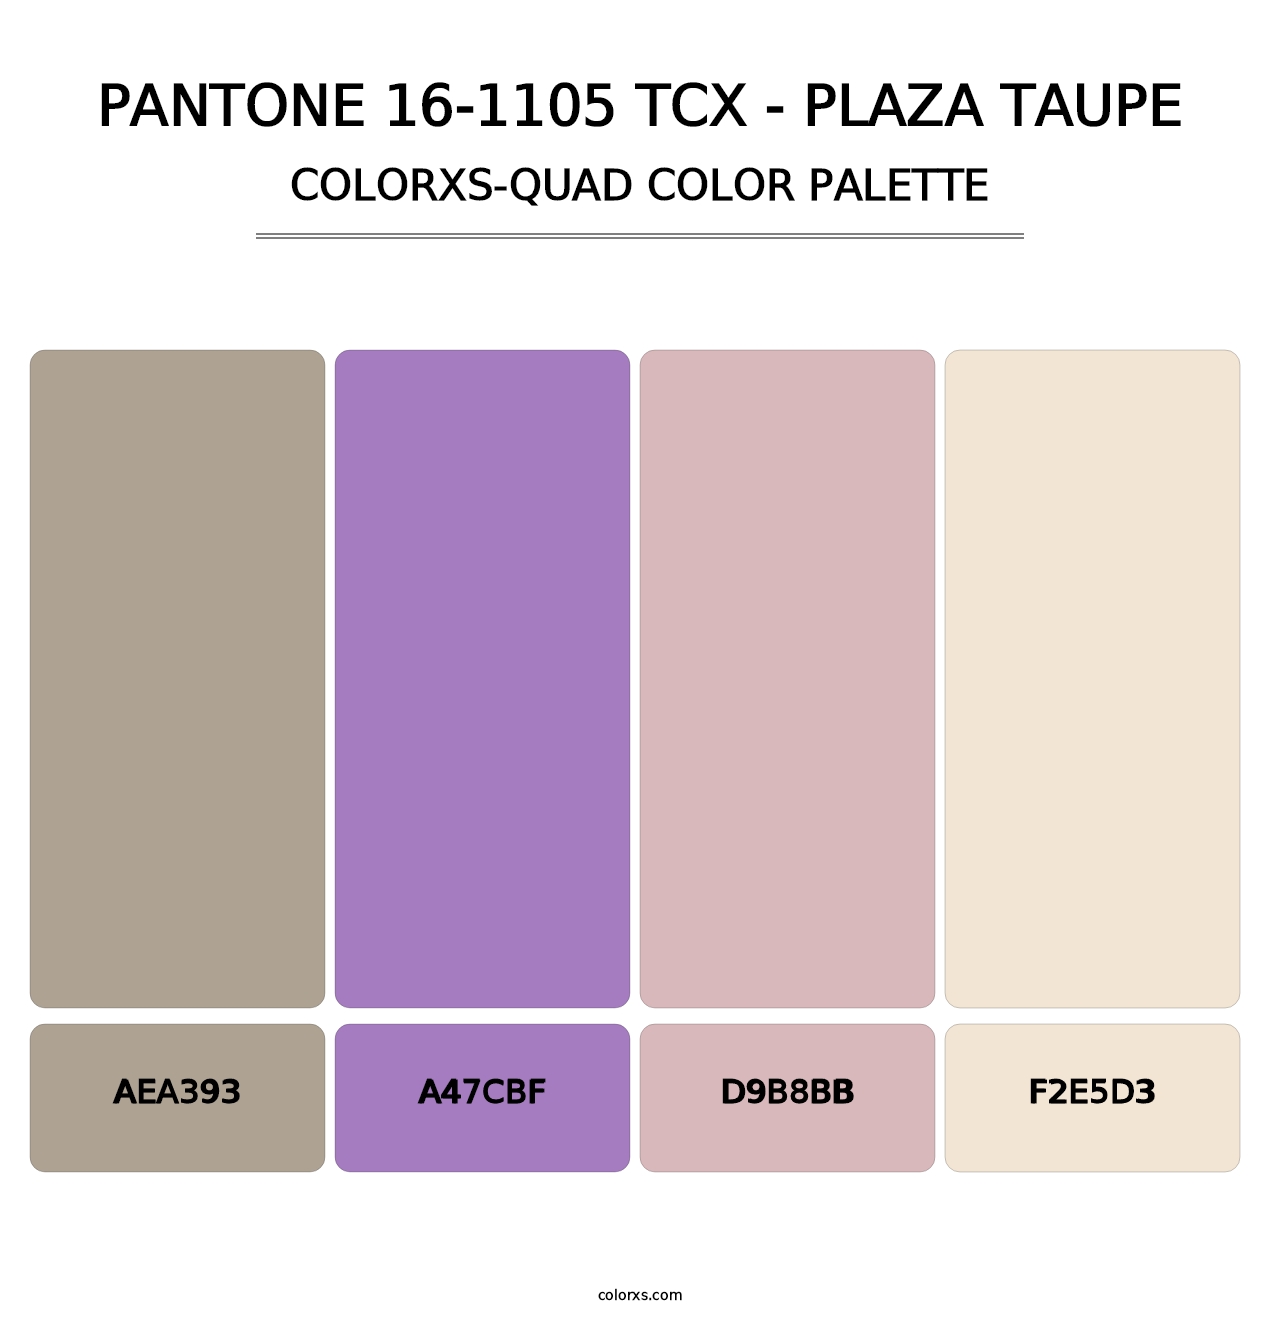 PANTONE 16-1105 TCX - Plaza Taupe - Colorxs Quad Palette